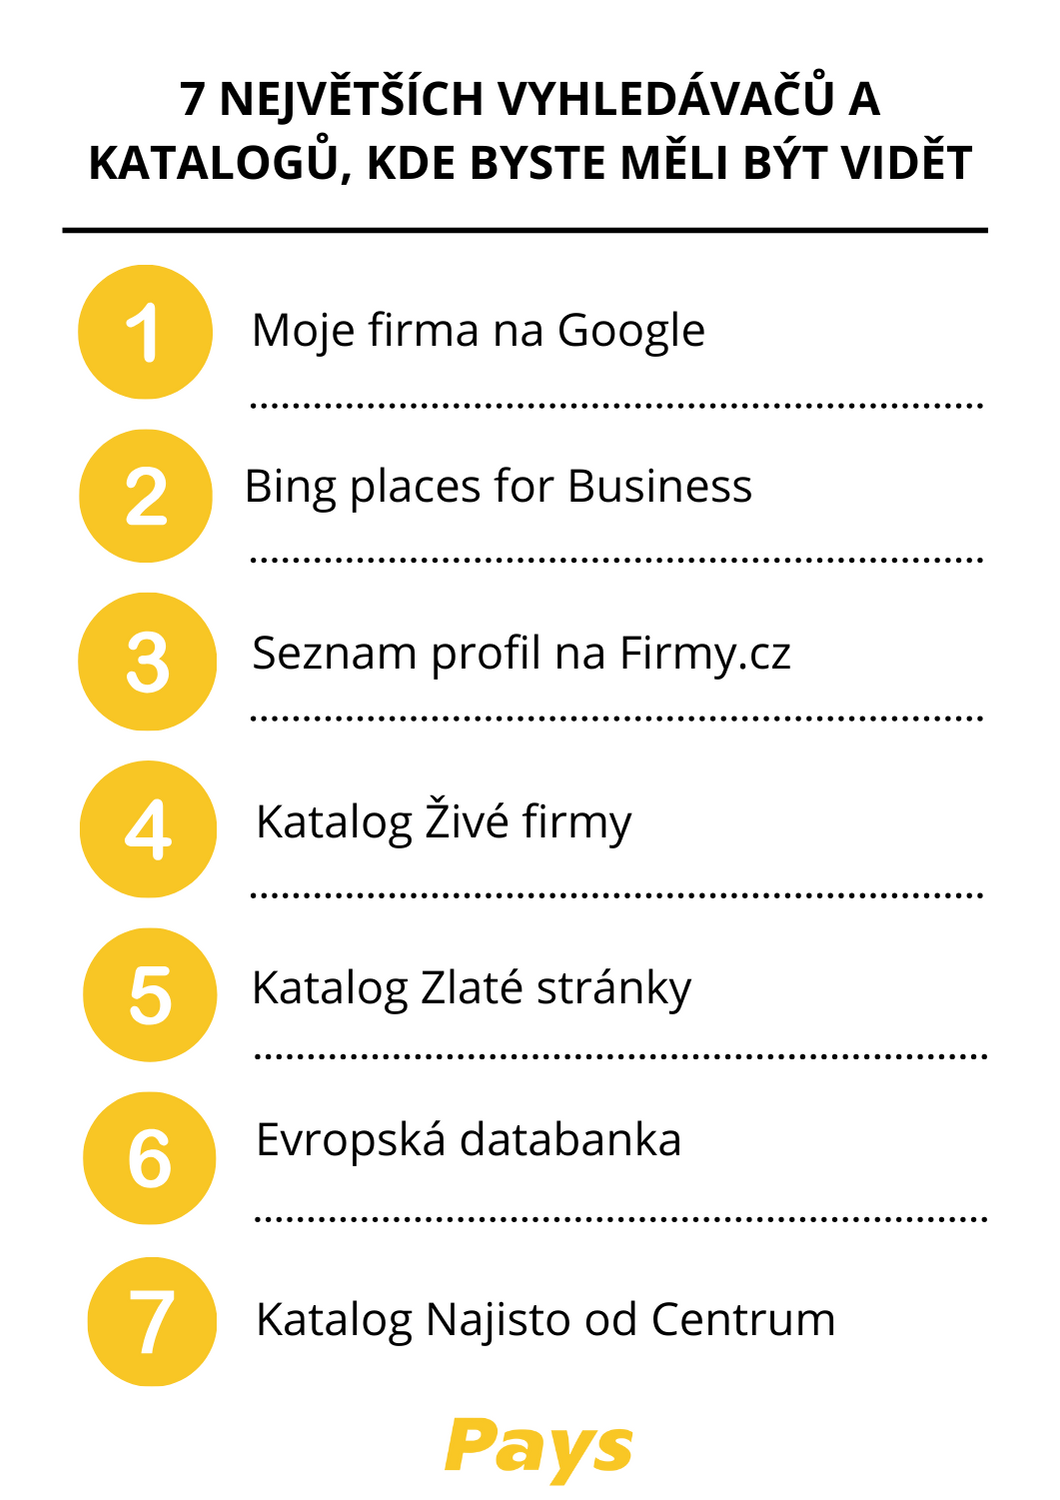 Na obrázku je seznam největších a nejoblíbenějších českých vyhledávačů a katalogů firem přesně v tom pořadí, jak je uvedeno v článku.